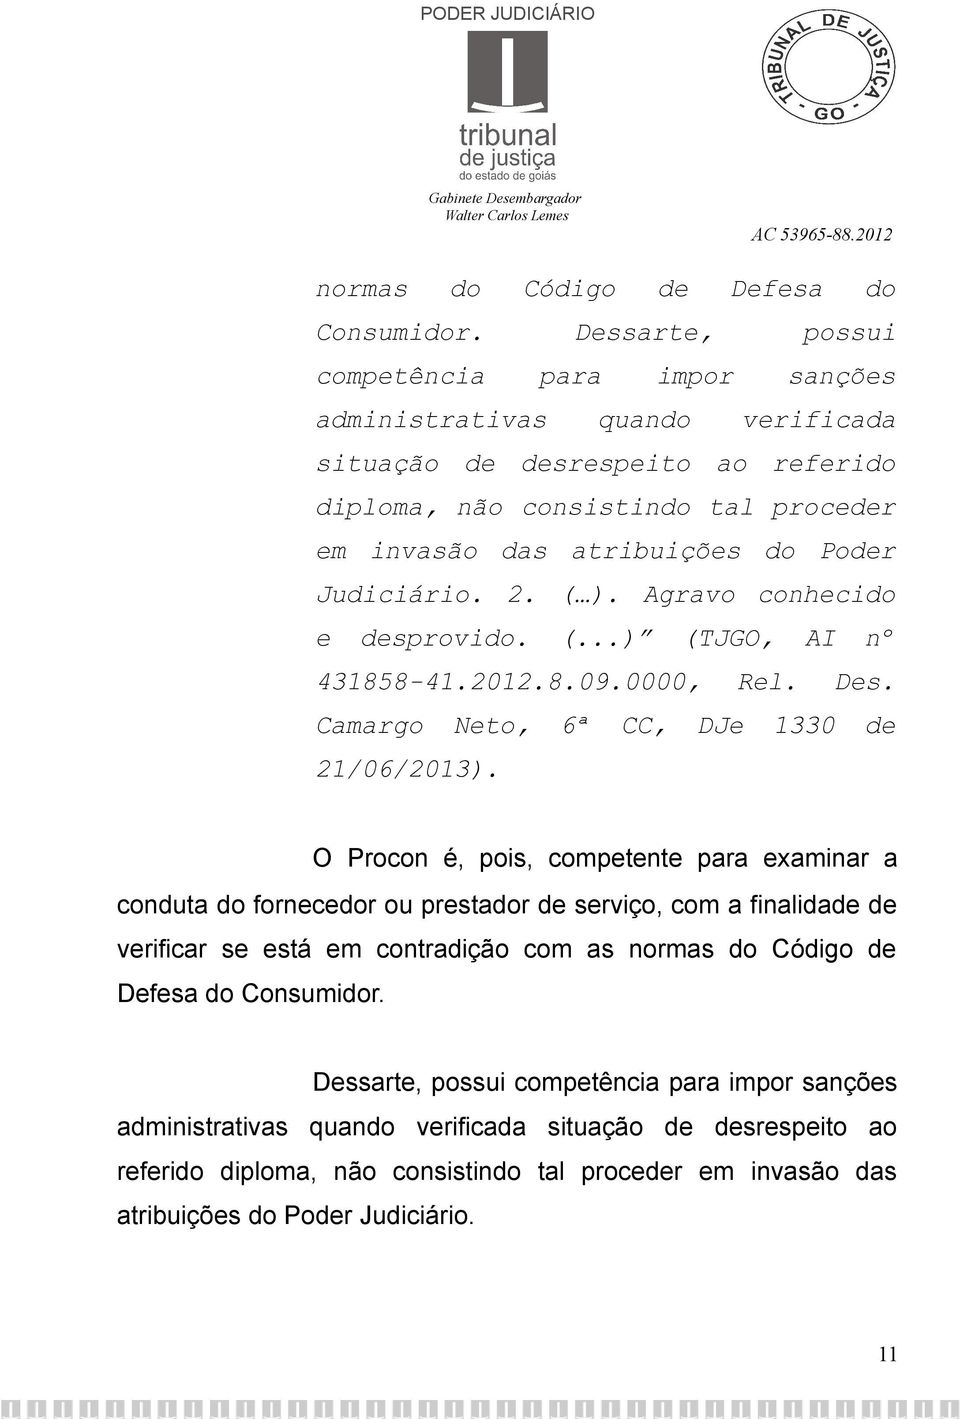 Judiciário. 2. ( ). Agravo conhecido e desprovido. (...) (TJGO, AI nº 431858-41.2012.8.09.0000, Rel. Des. Camargo Neto, 6ª CC, DJe 1330 de 21/06/2013).